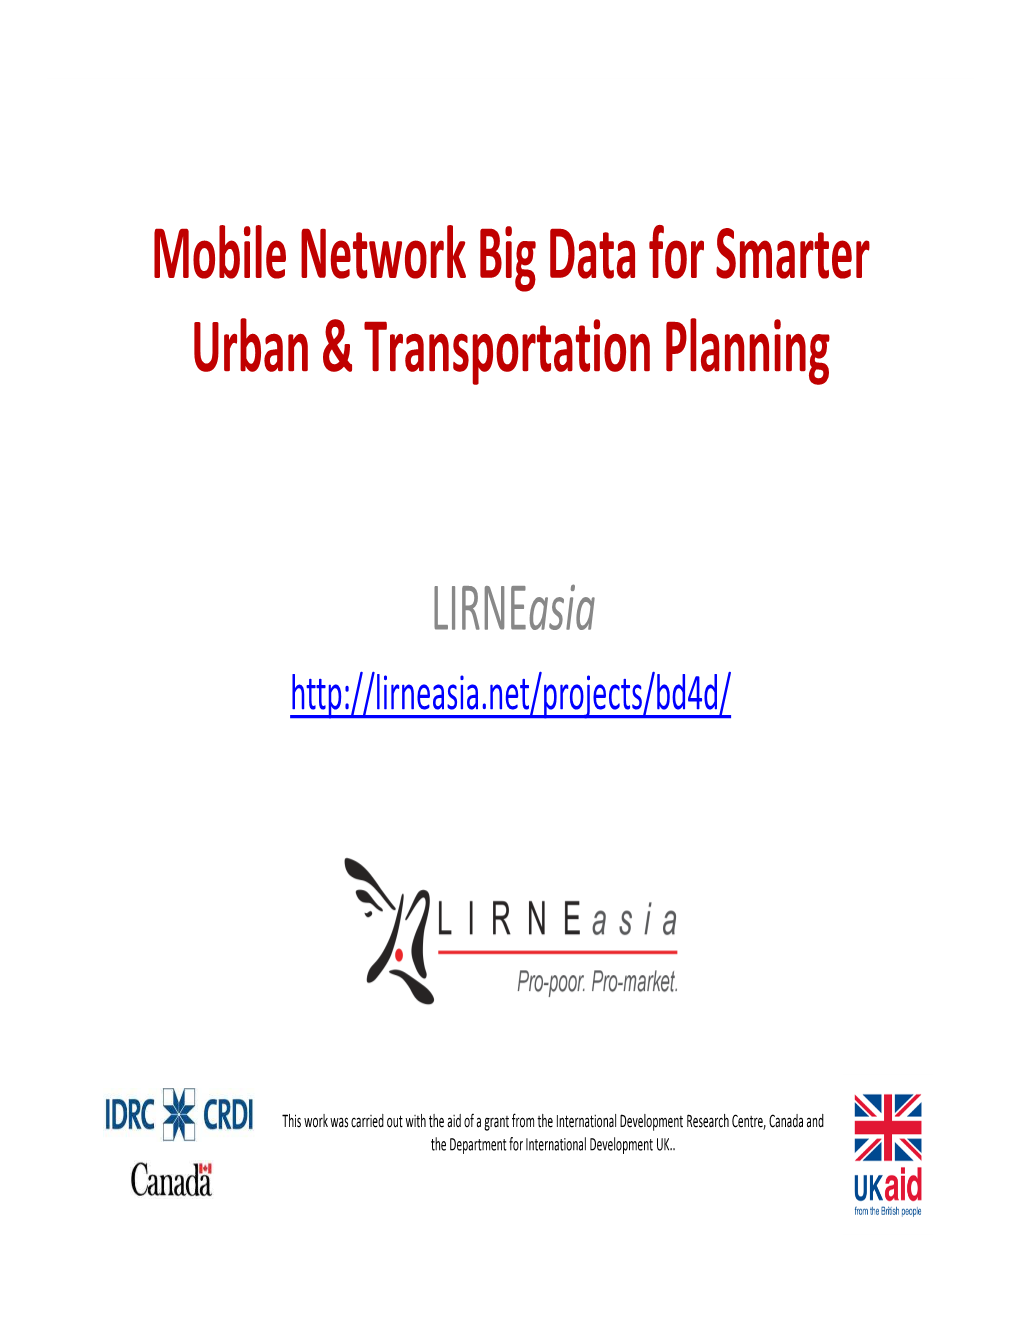 Mobile Network Big Data for Smarter Urban & Transportation Planning